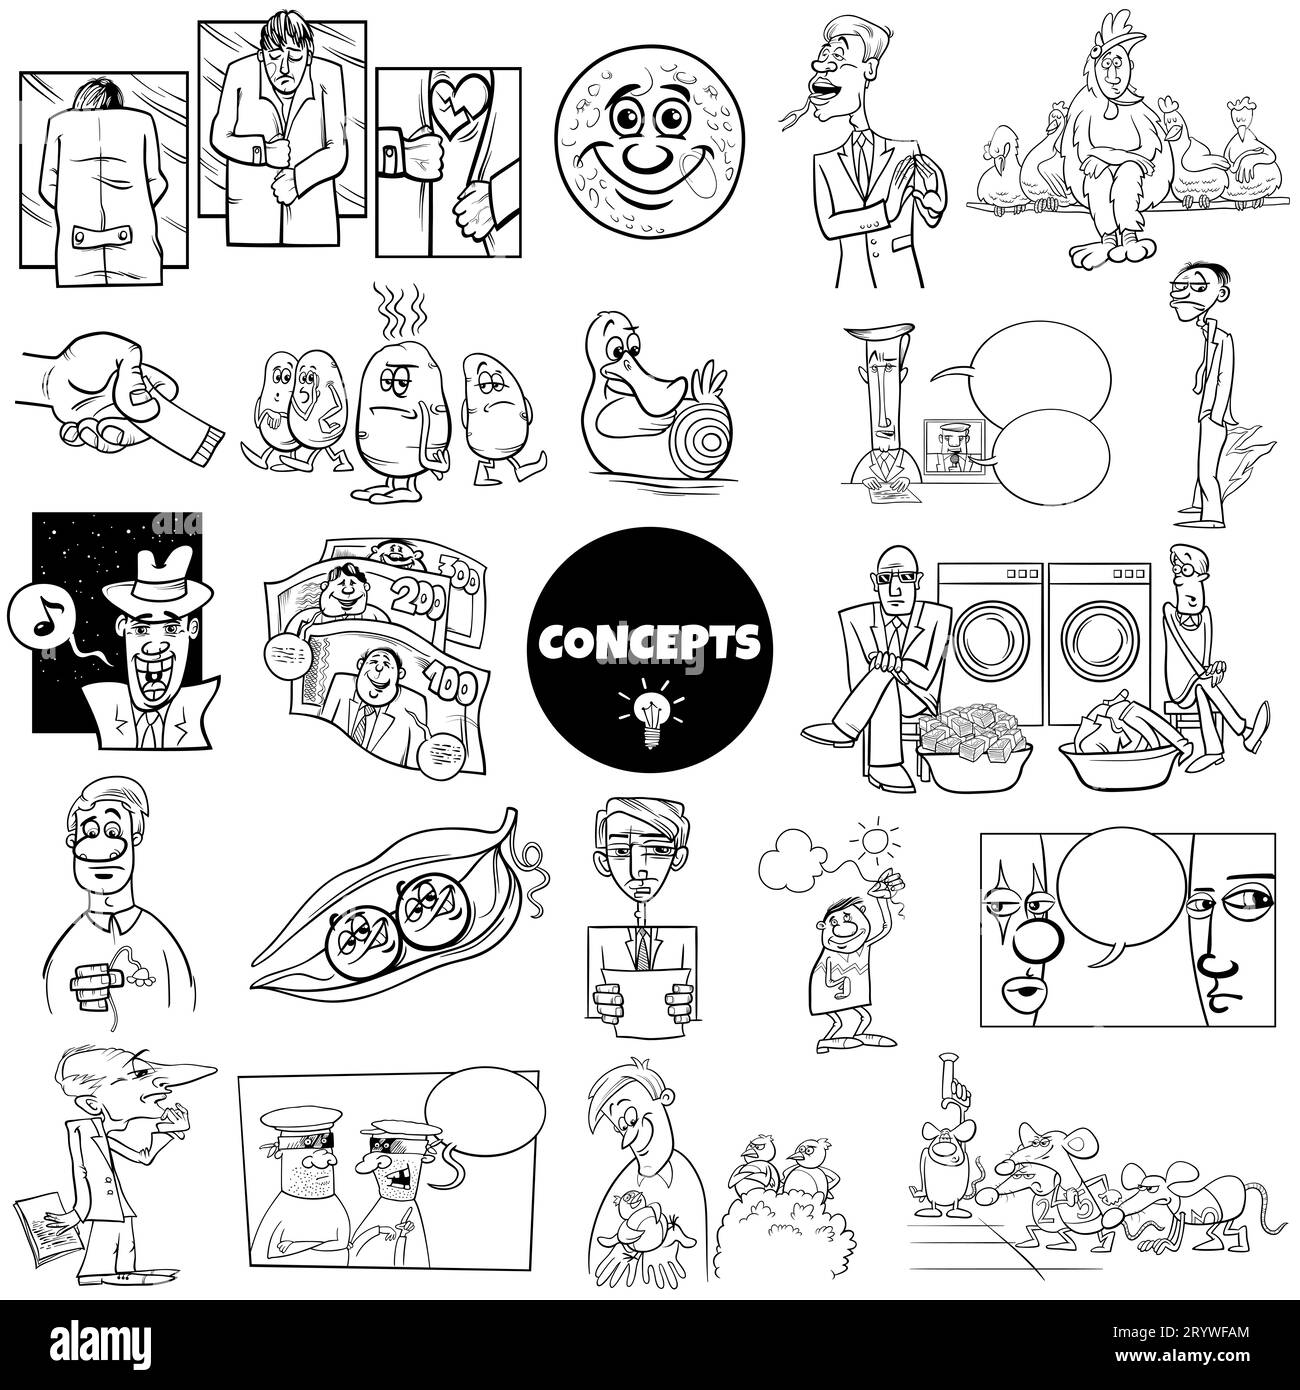 Ensemble d'ilustration noir et blanc de concepts humoristiques de dessins animés ou de métaphores et d'idées avec des personnages comiques Banque D'Images